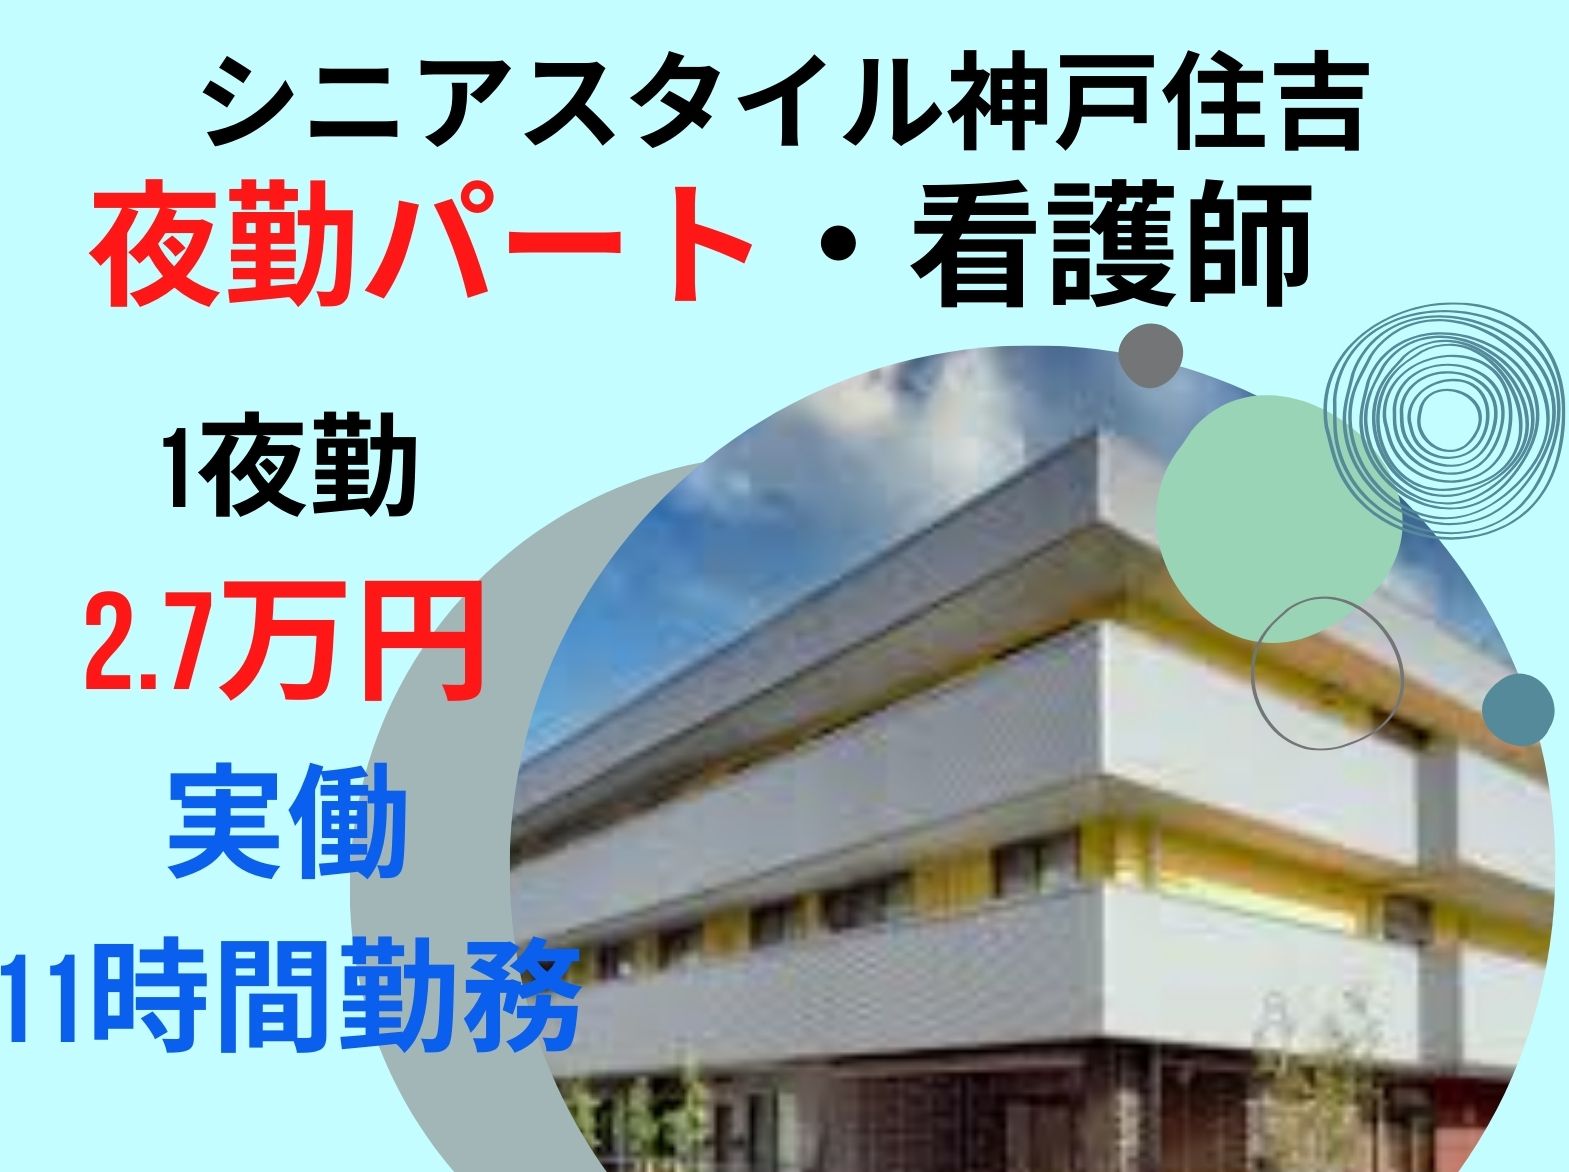 シニアスタイル神戸住吉のパート・アルバイト 看護師 介護付有料老人ホーム求人イメージ